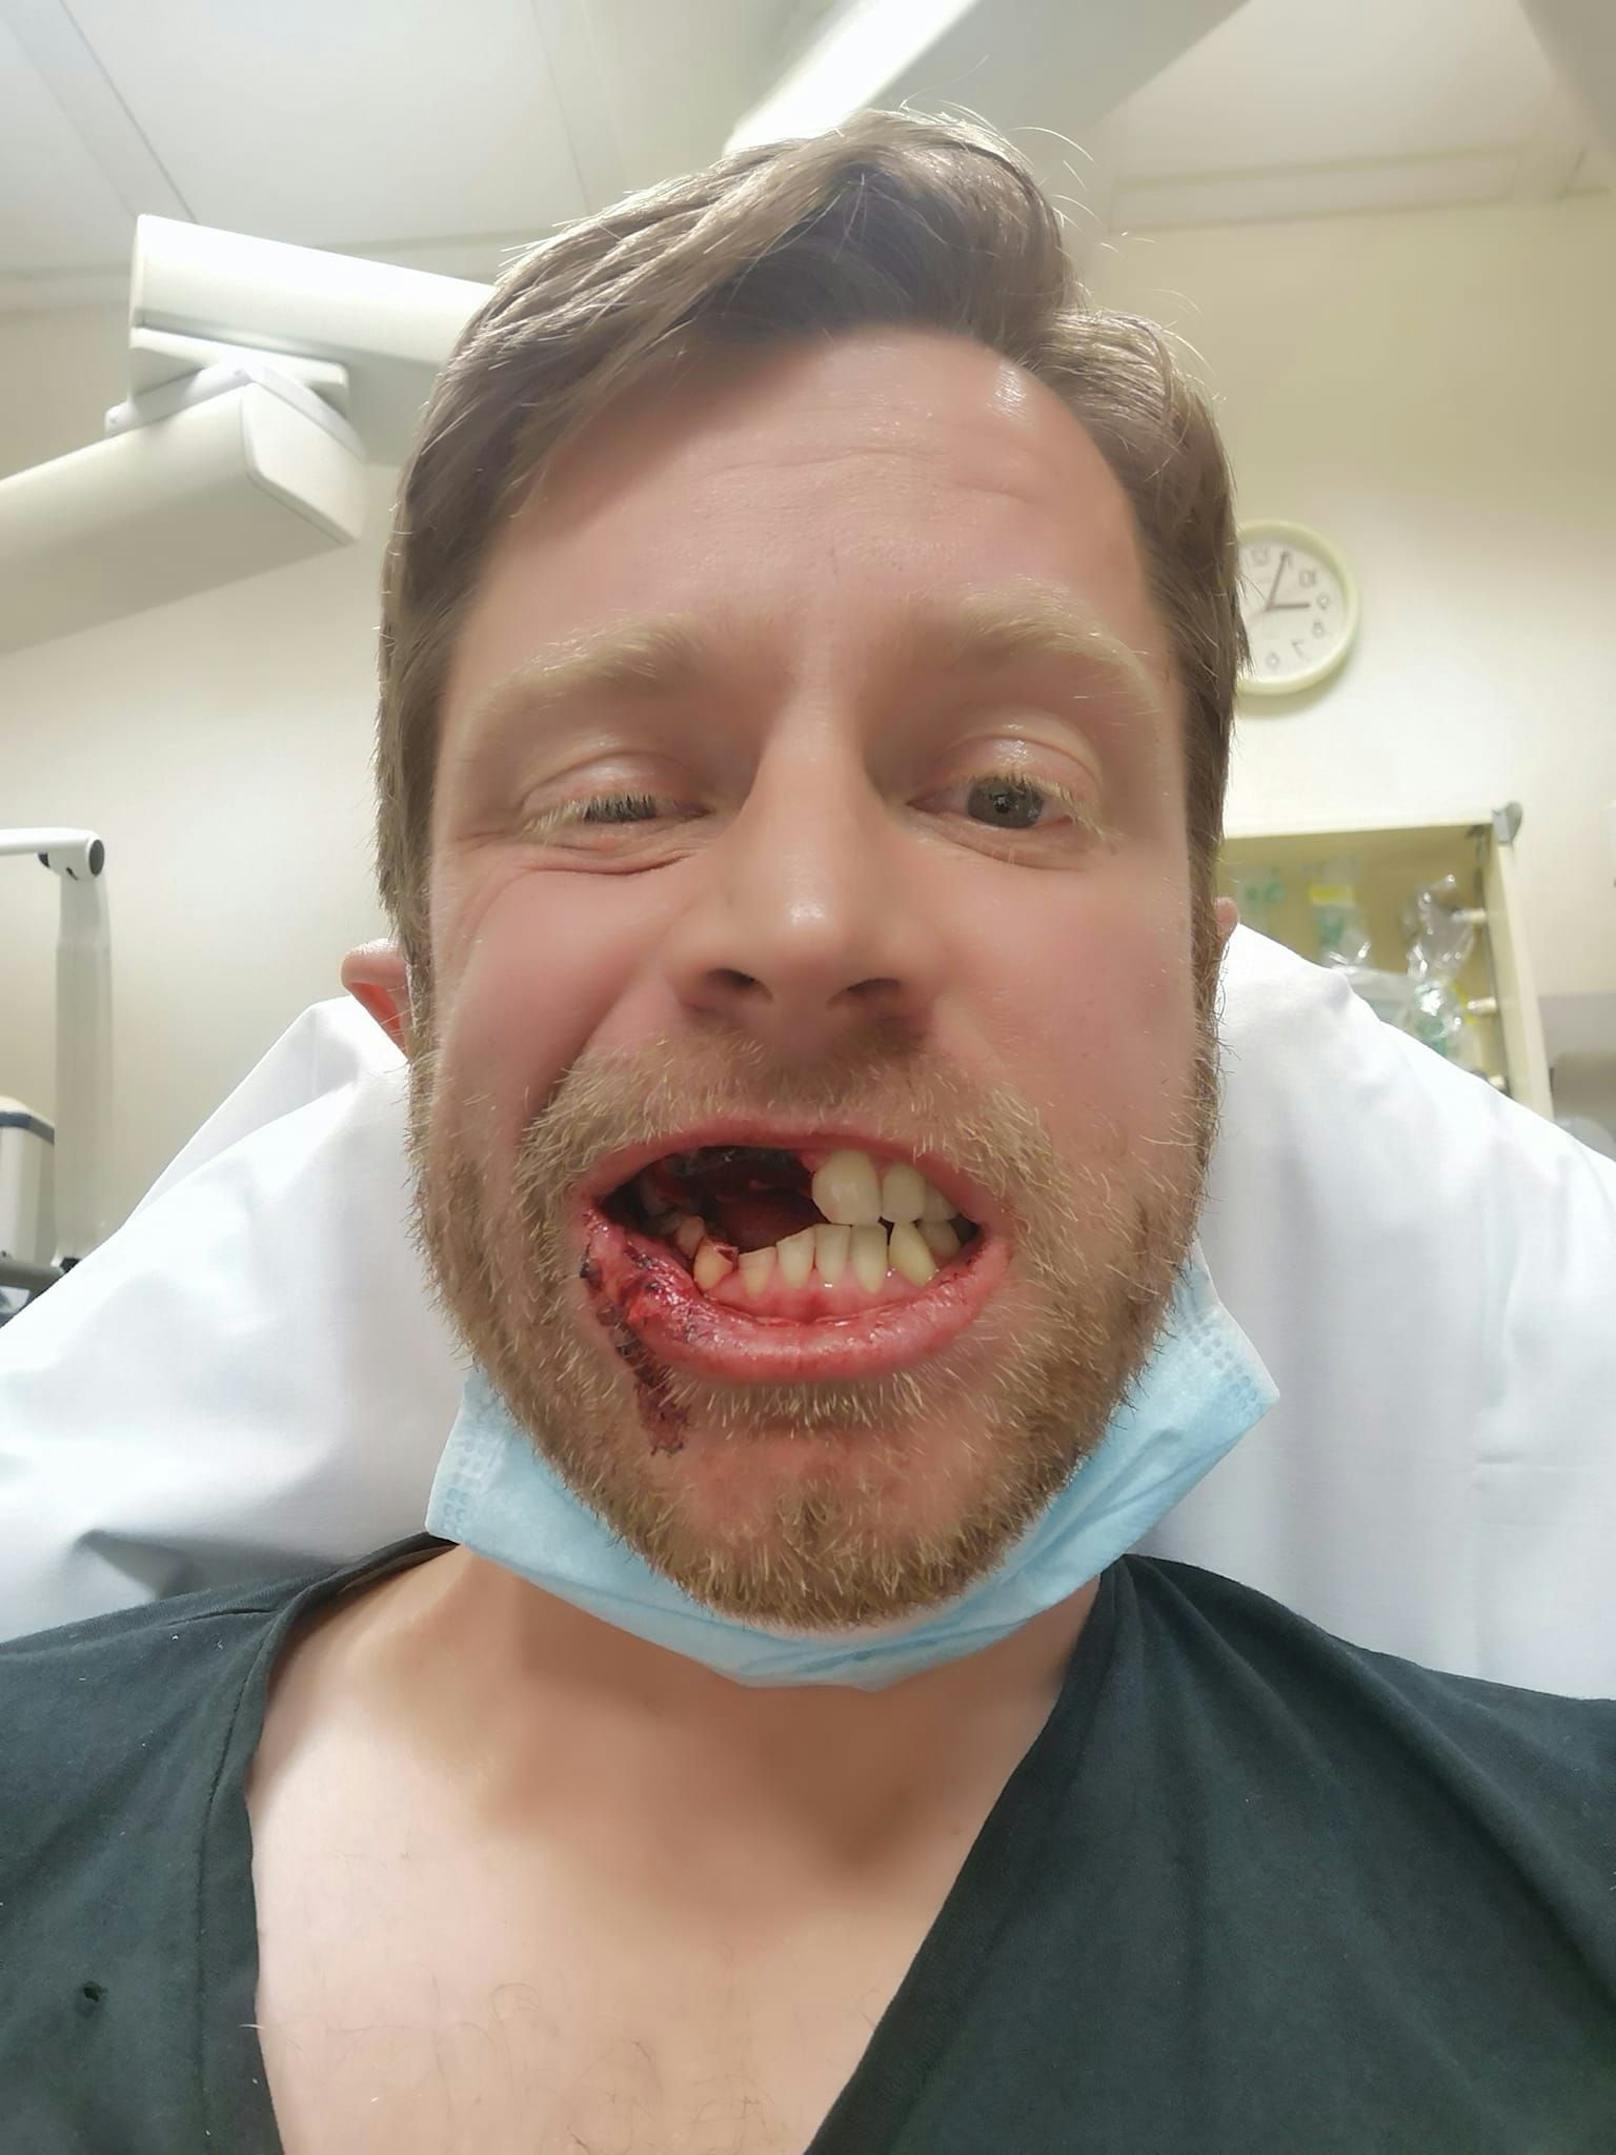 Zähne weg – E-Tschick explodiert plötzlich in Mund